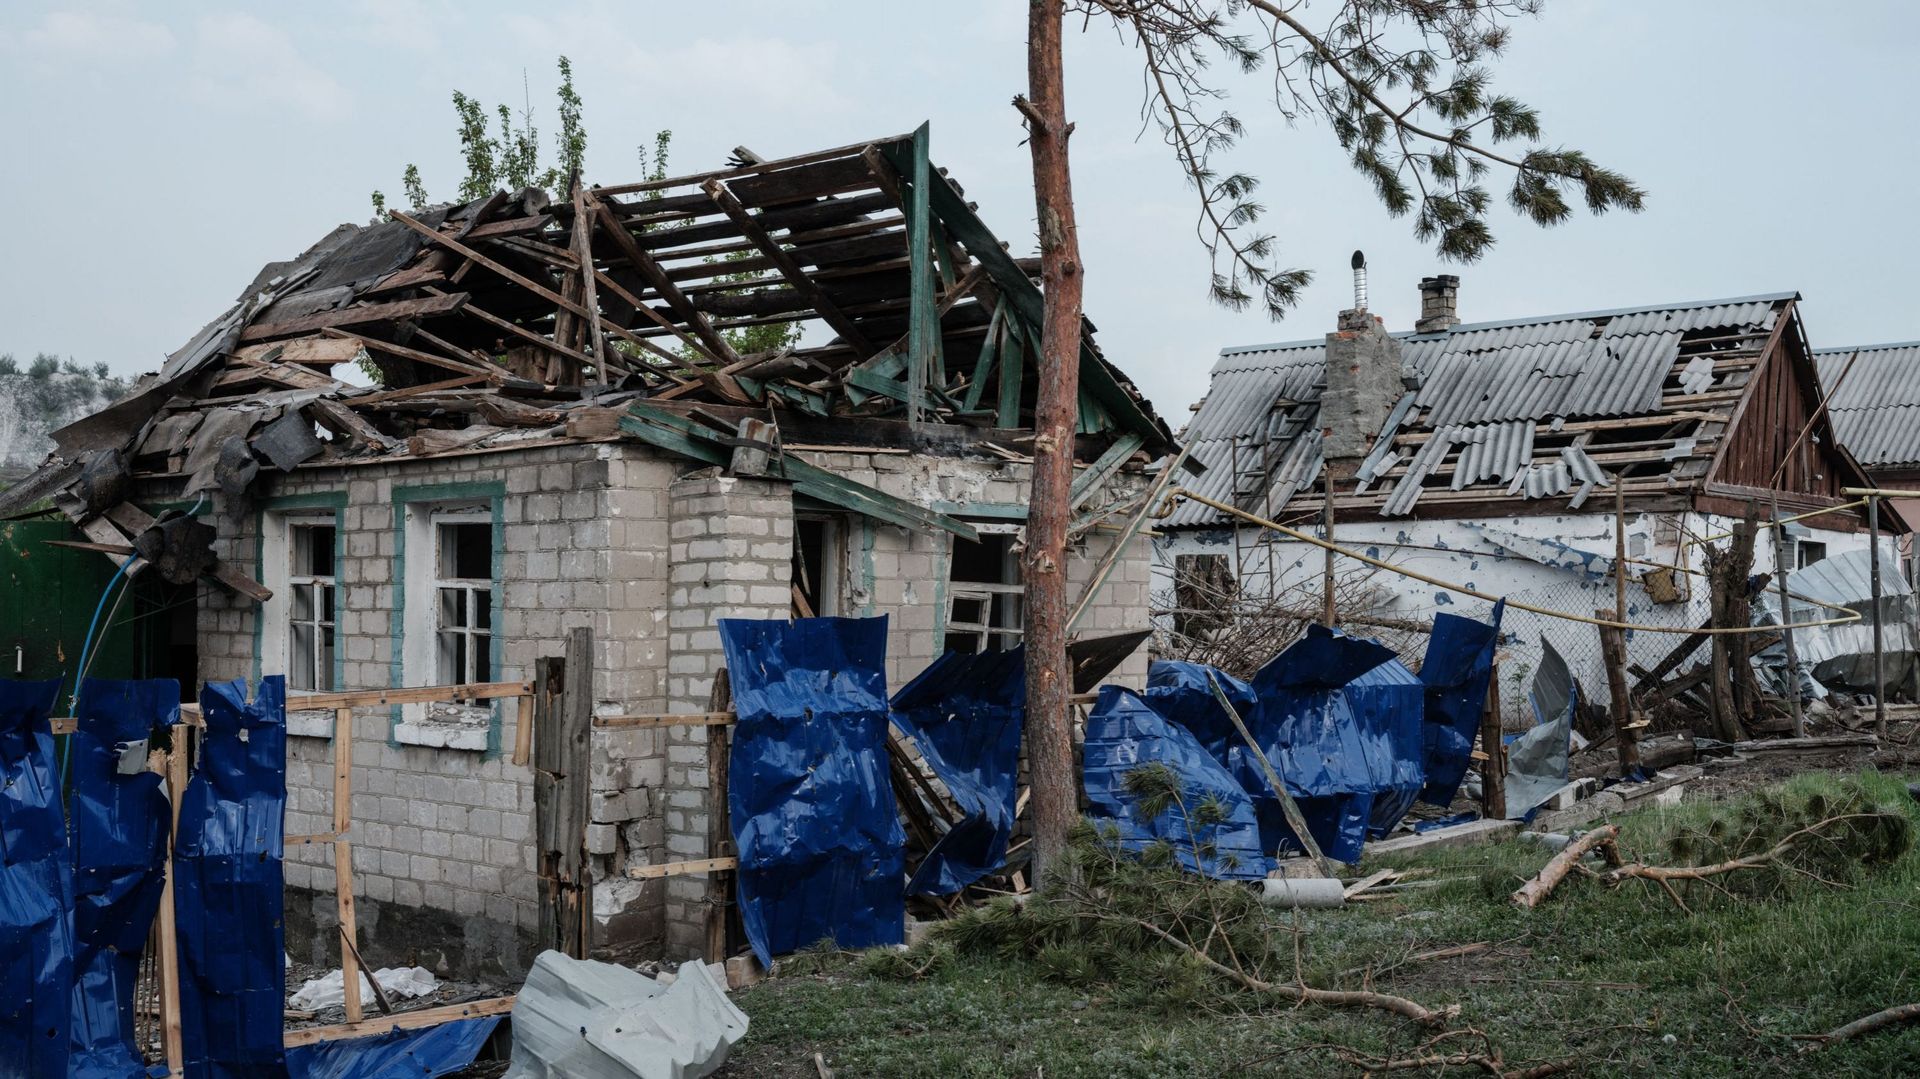 Les restes de maisons détruites suite au bombardement du village de Bilogorivka, dans la région de Lougansk, dans l'est de l'Ukraine, photographiés le 13 mai 2022